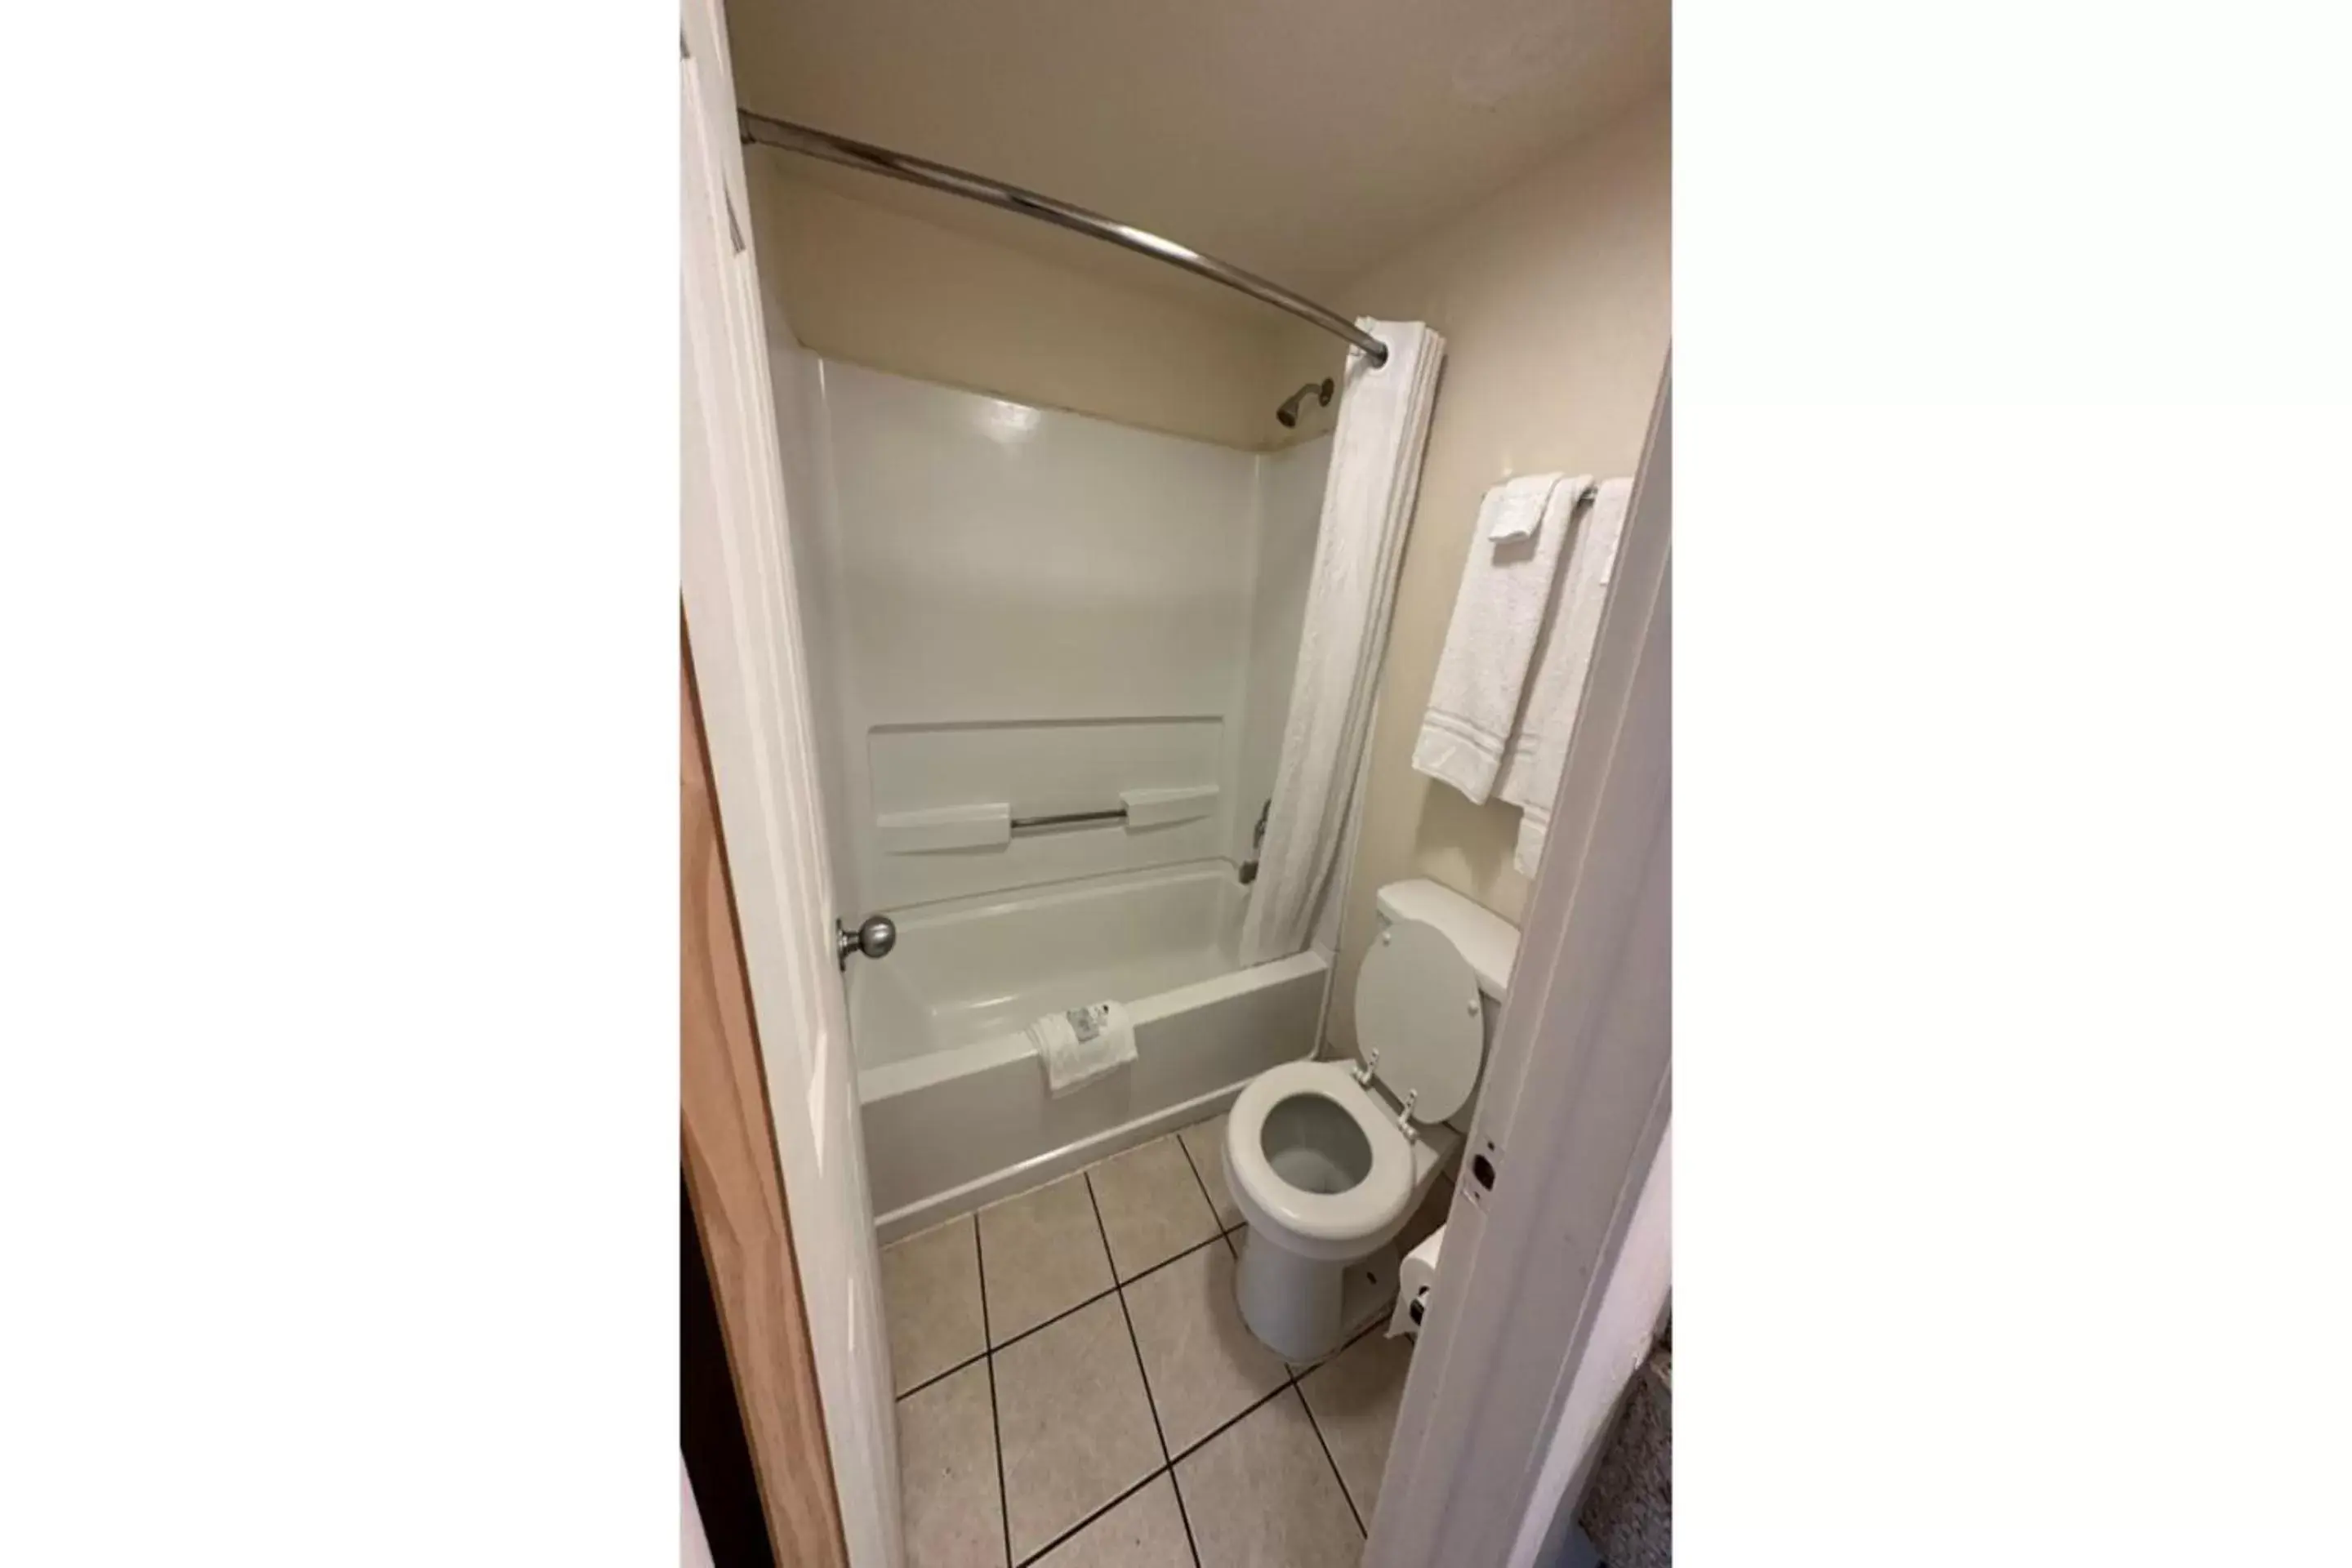 Bathroom in Oyo Hotel San Antonio Lackland AFB Seaworld Hwy 90 W